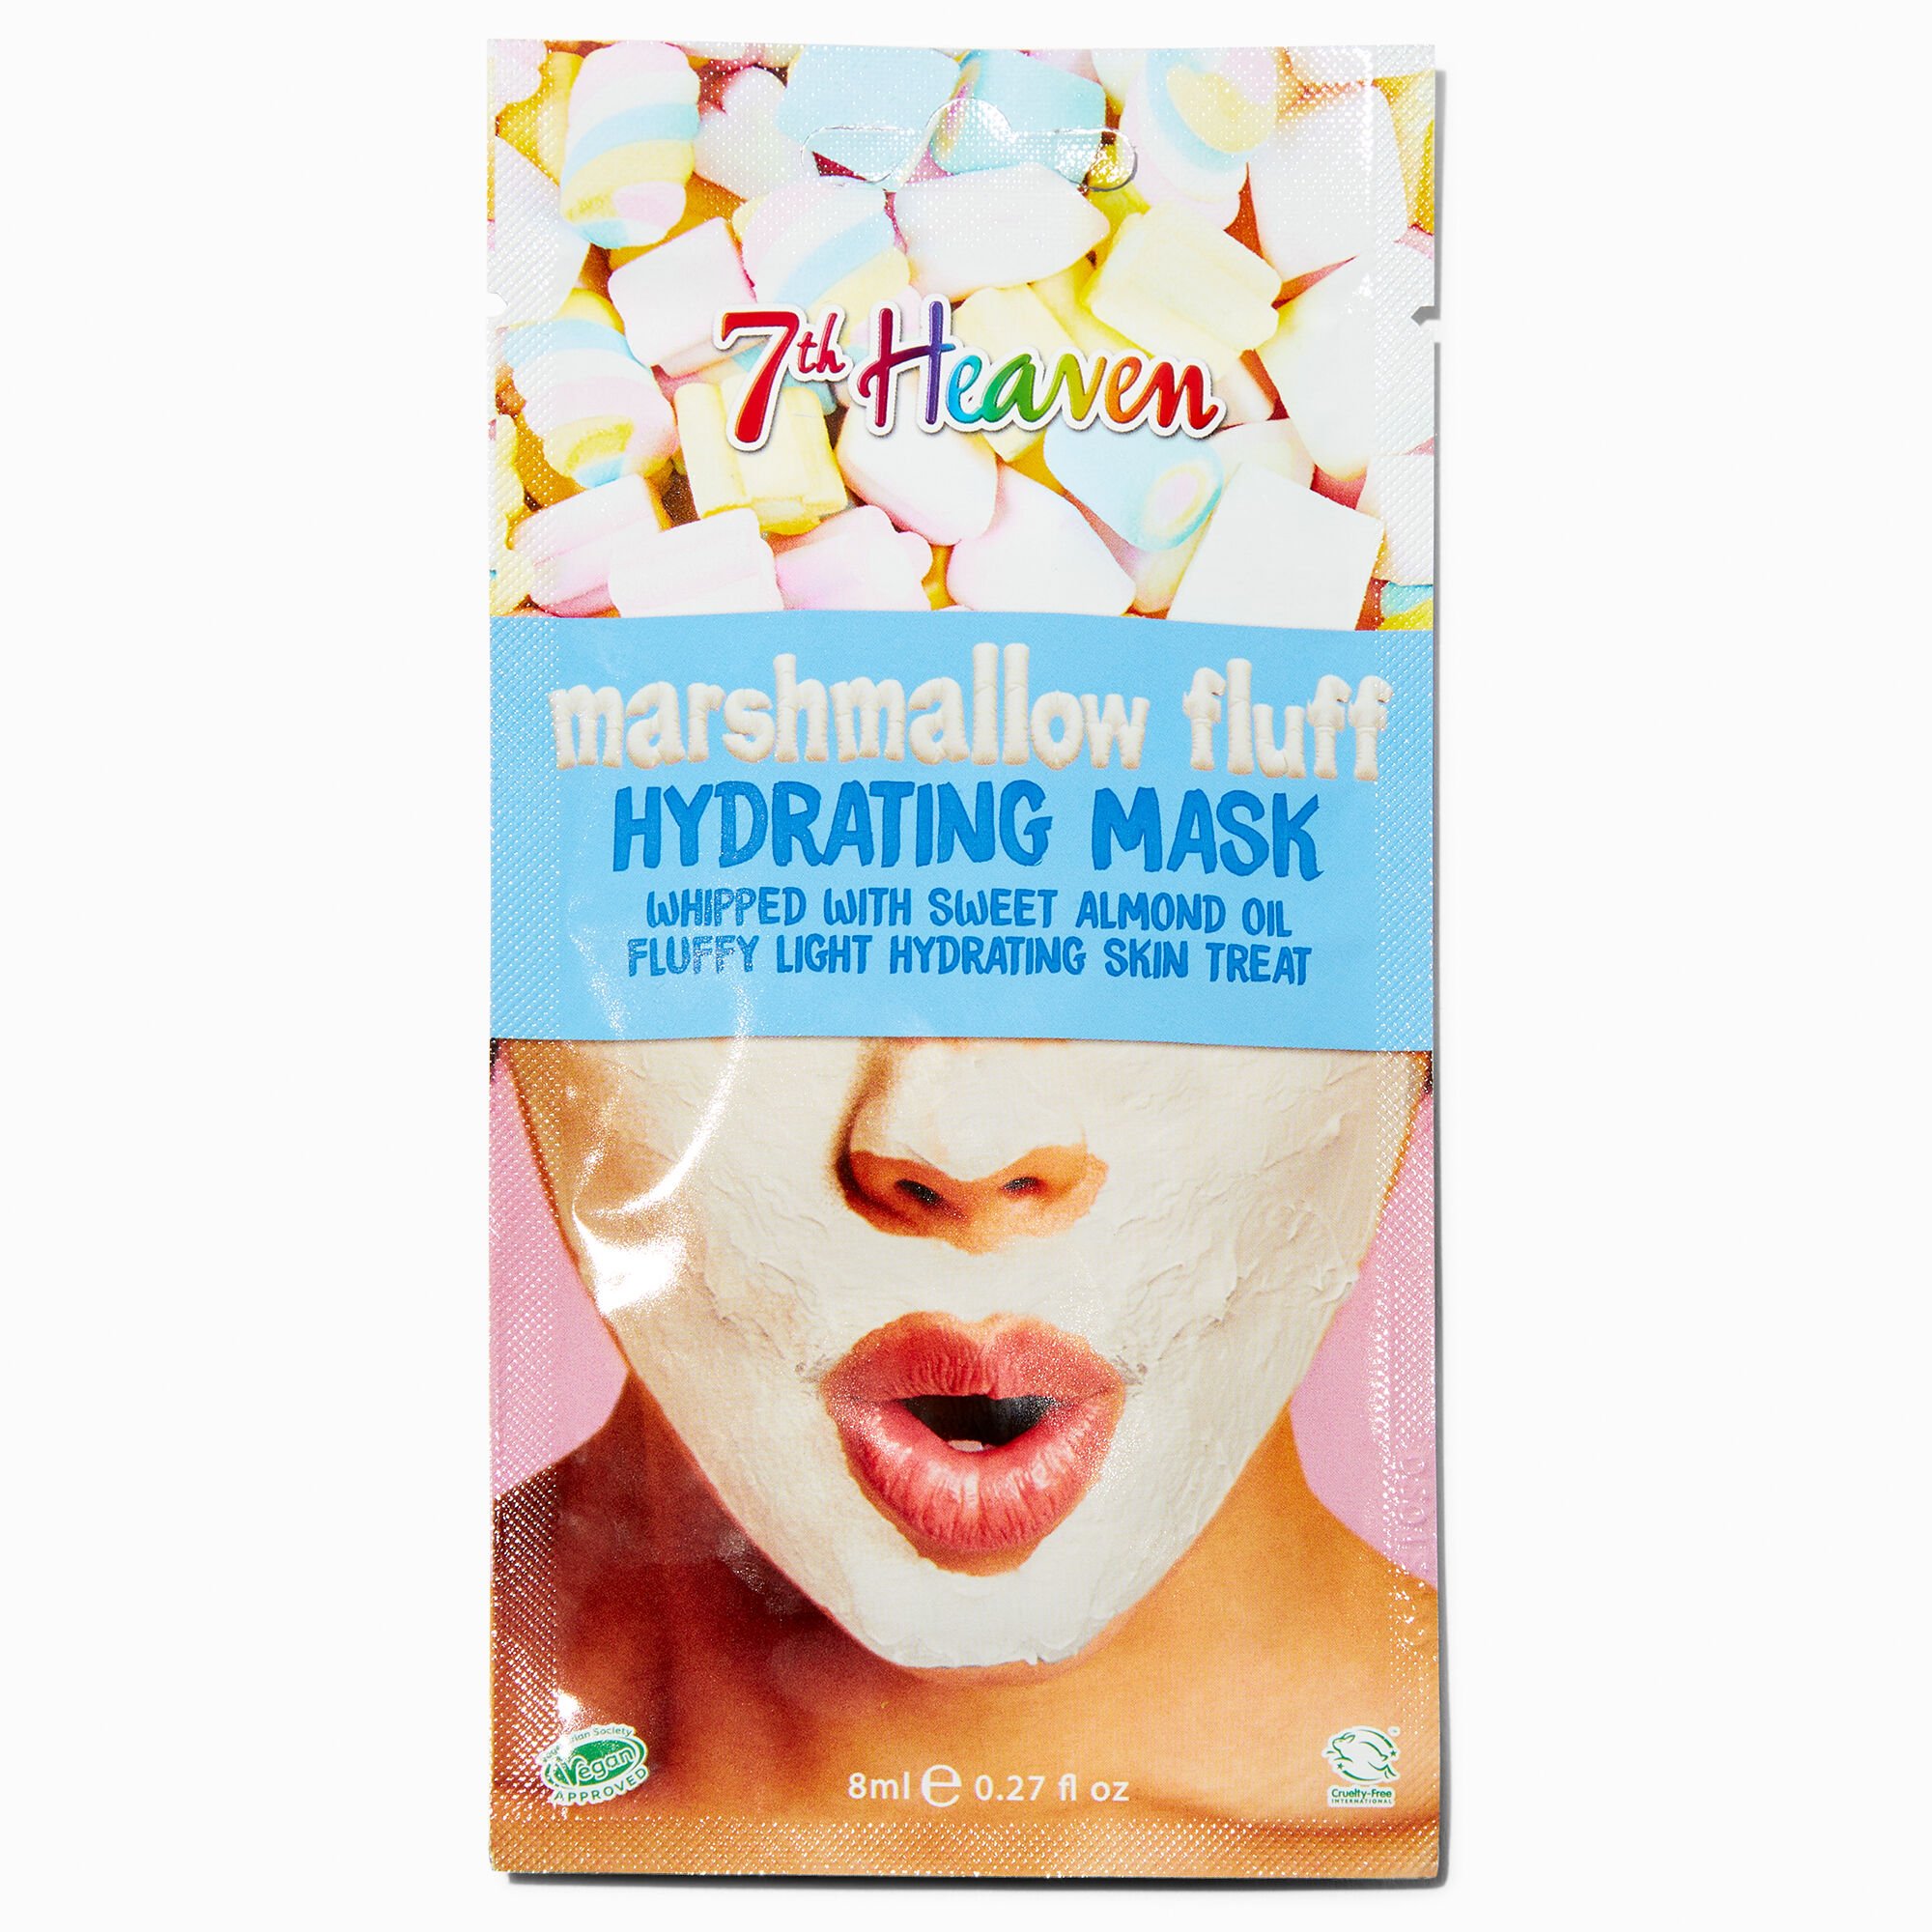 Claire's Masque hydratant Marshmallow Fluff 7th Heaven